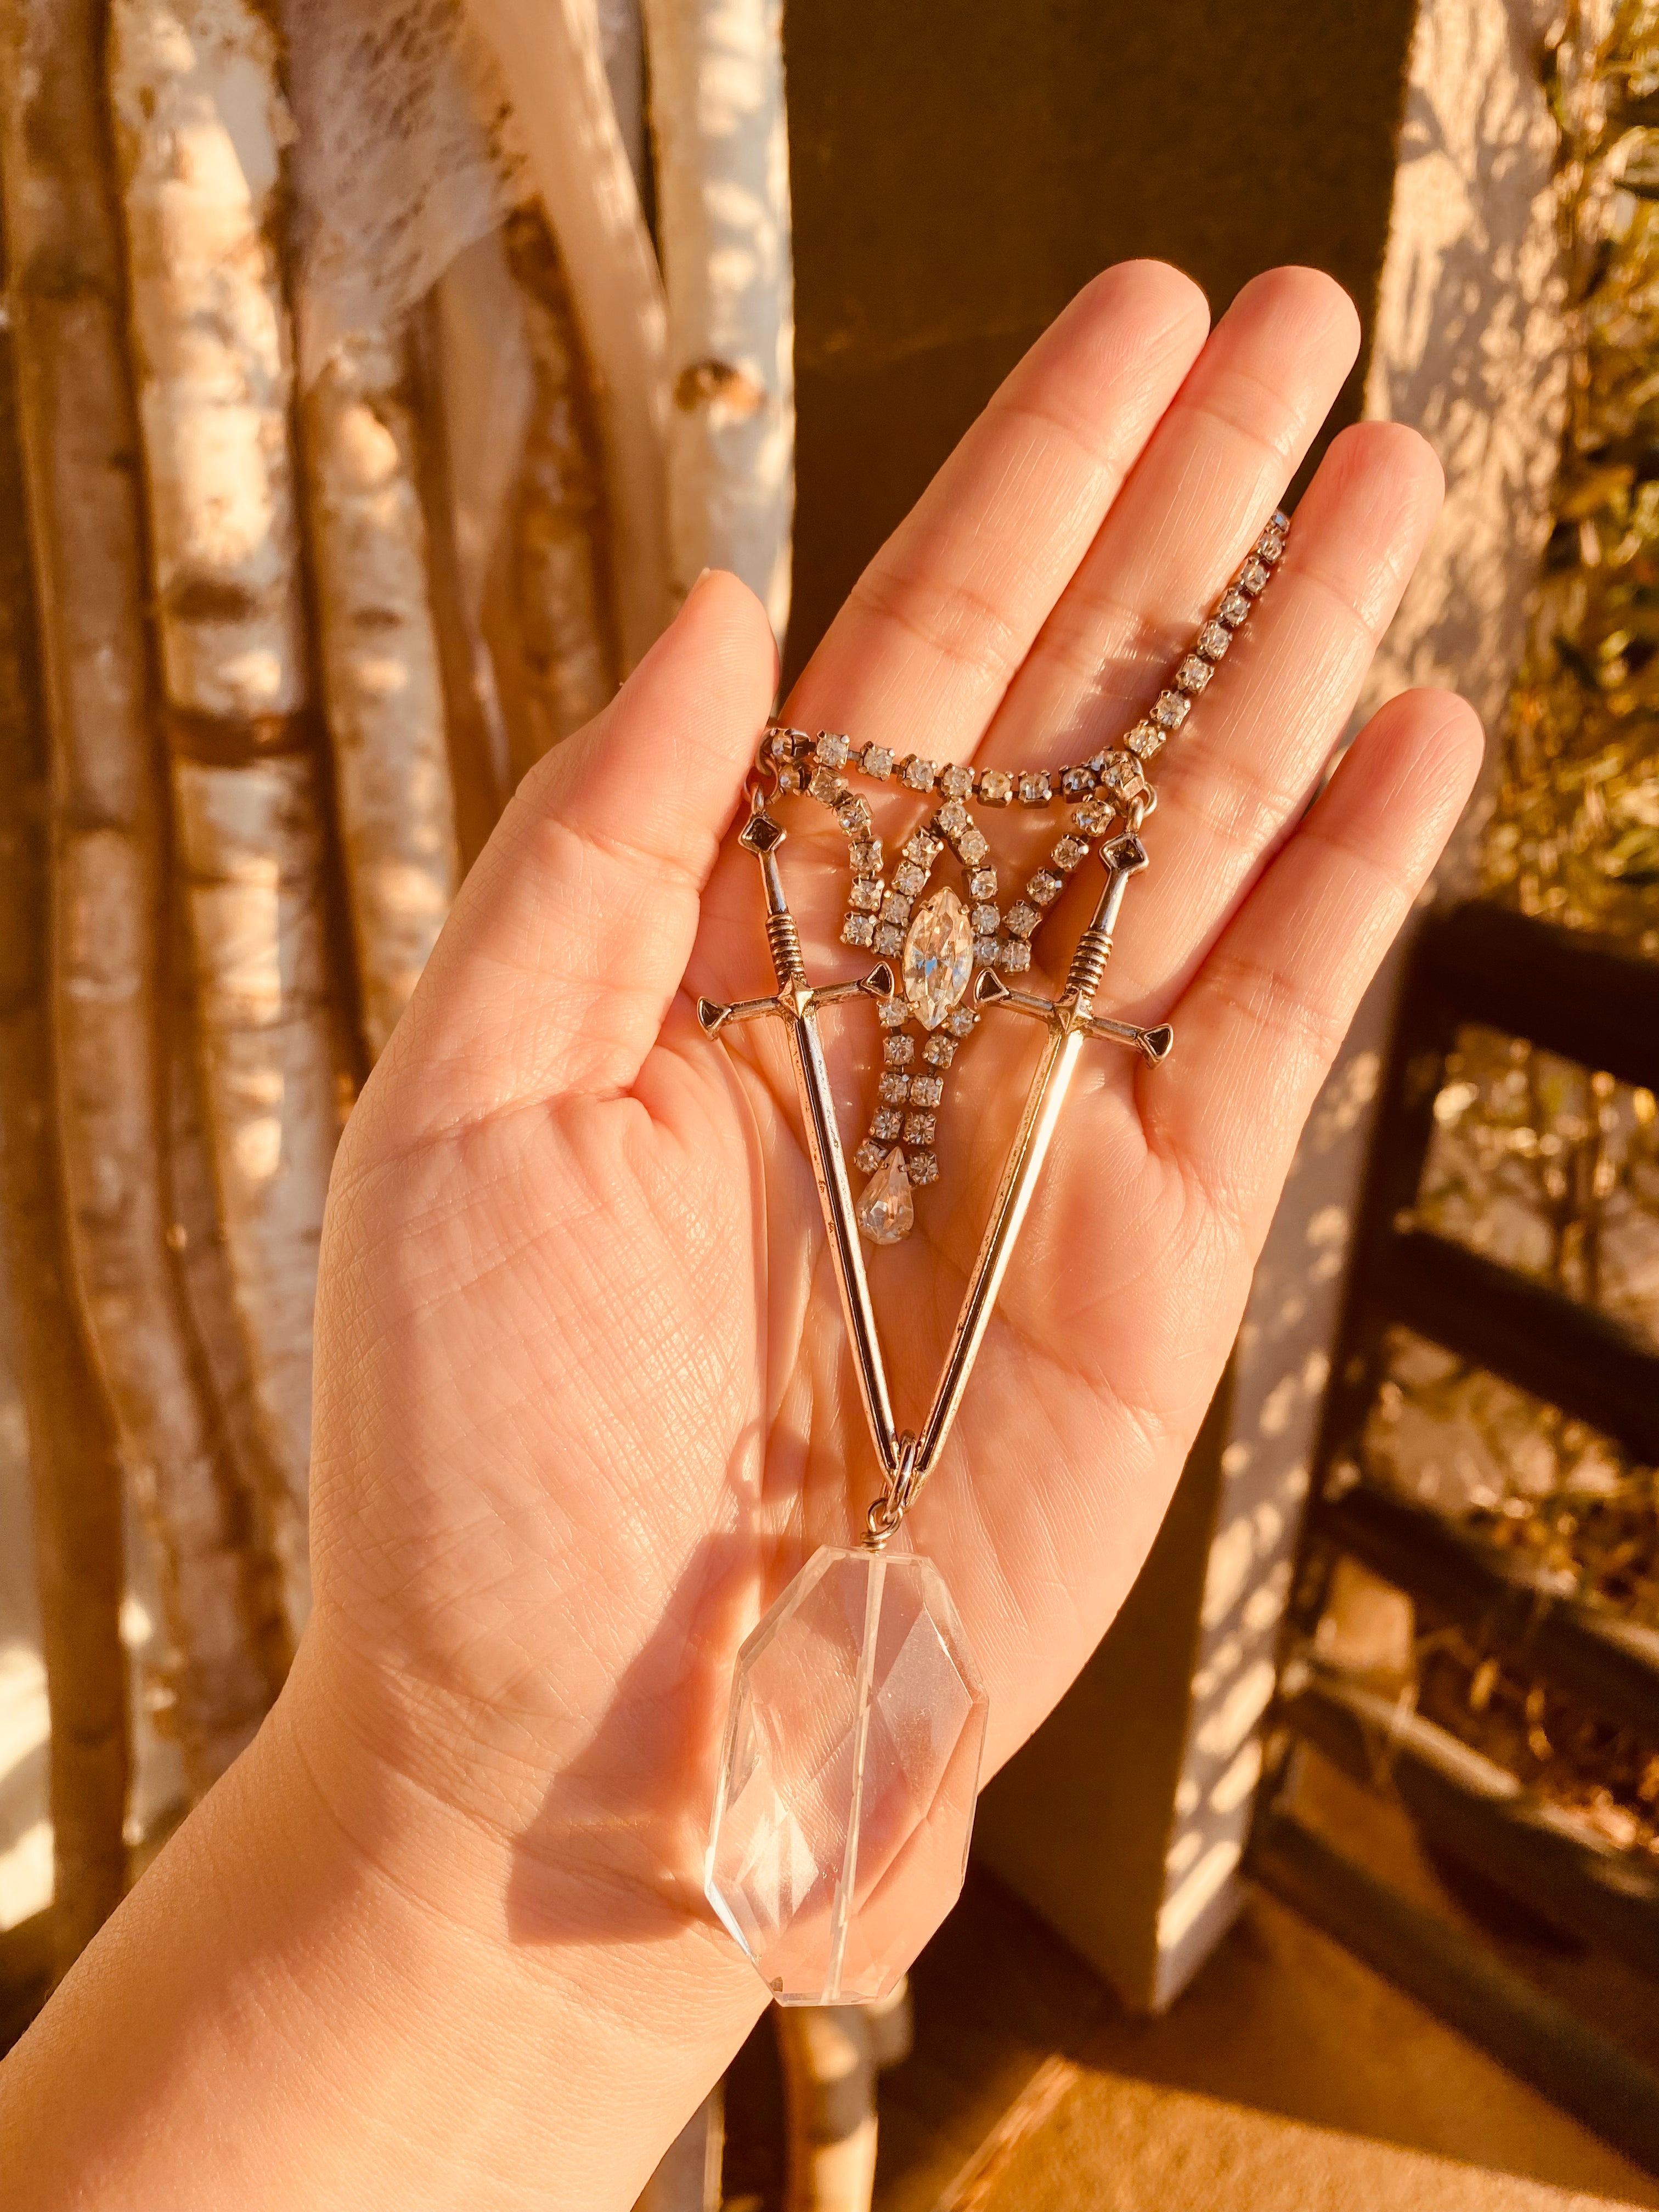 Dual sword quartz necklace by Jenny Dayco 7